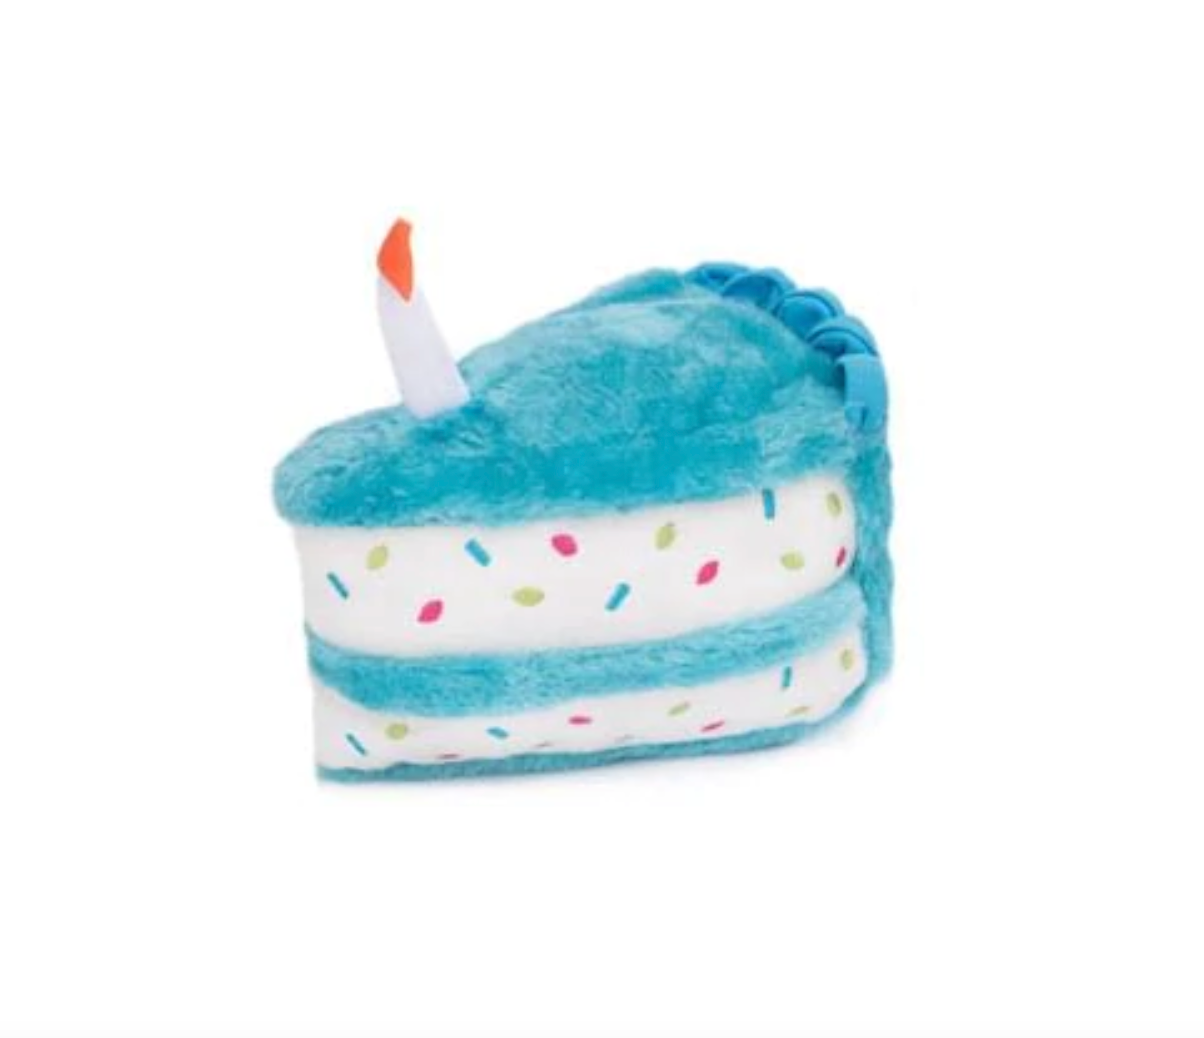 'Blue Birthday Cake' Toy